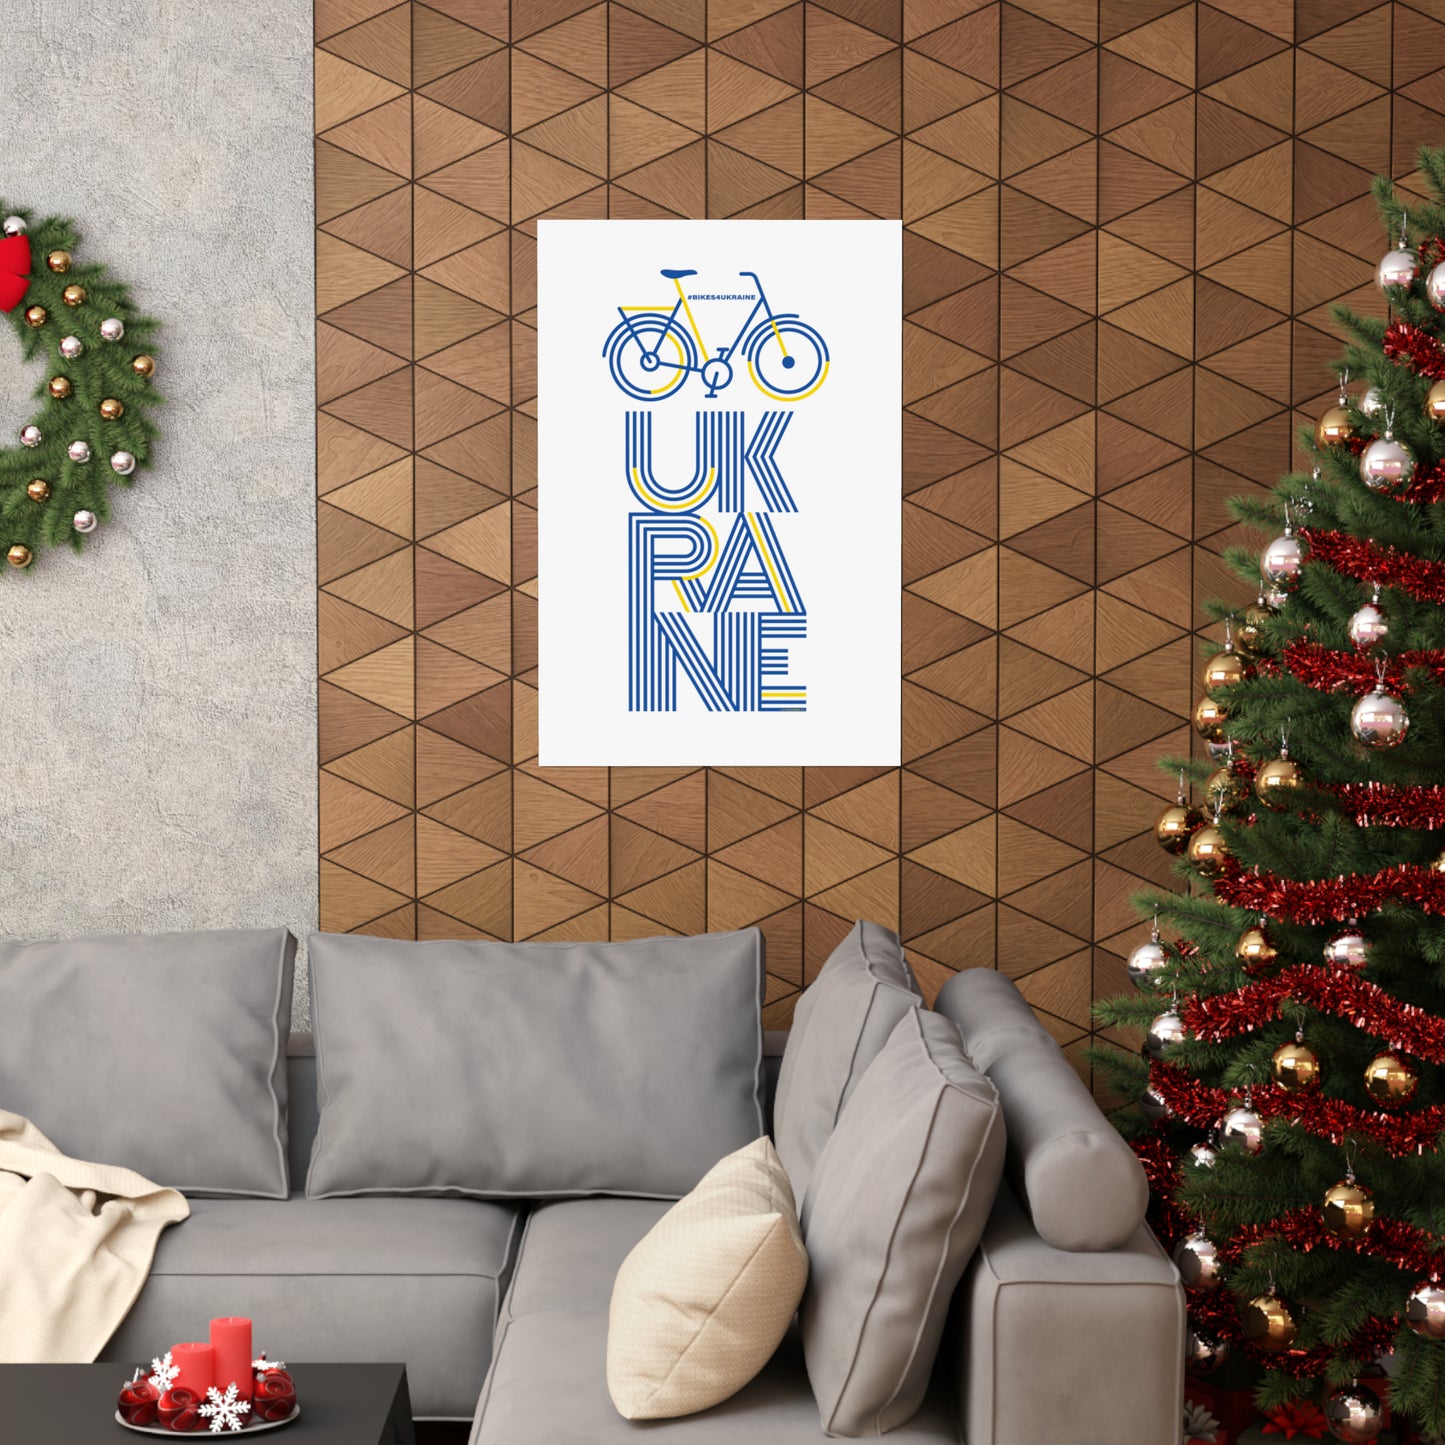 Bikes4Ukraine - Design by Brian Branch (CA) - White Design